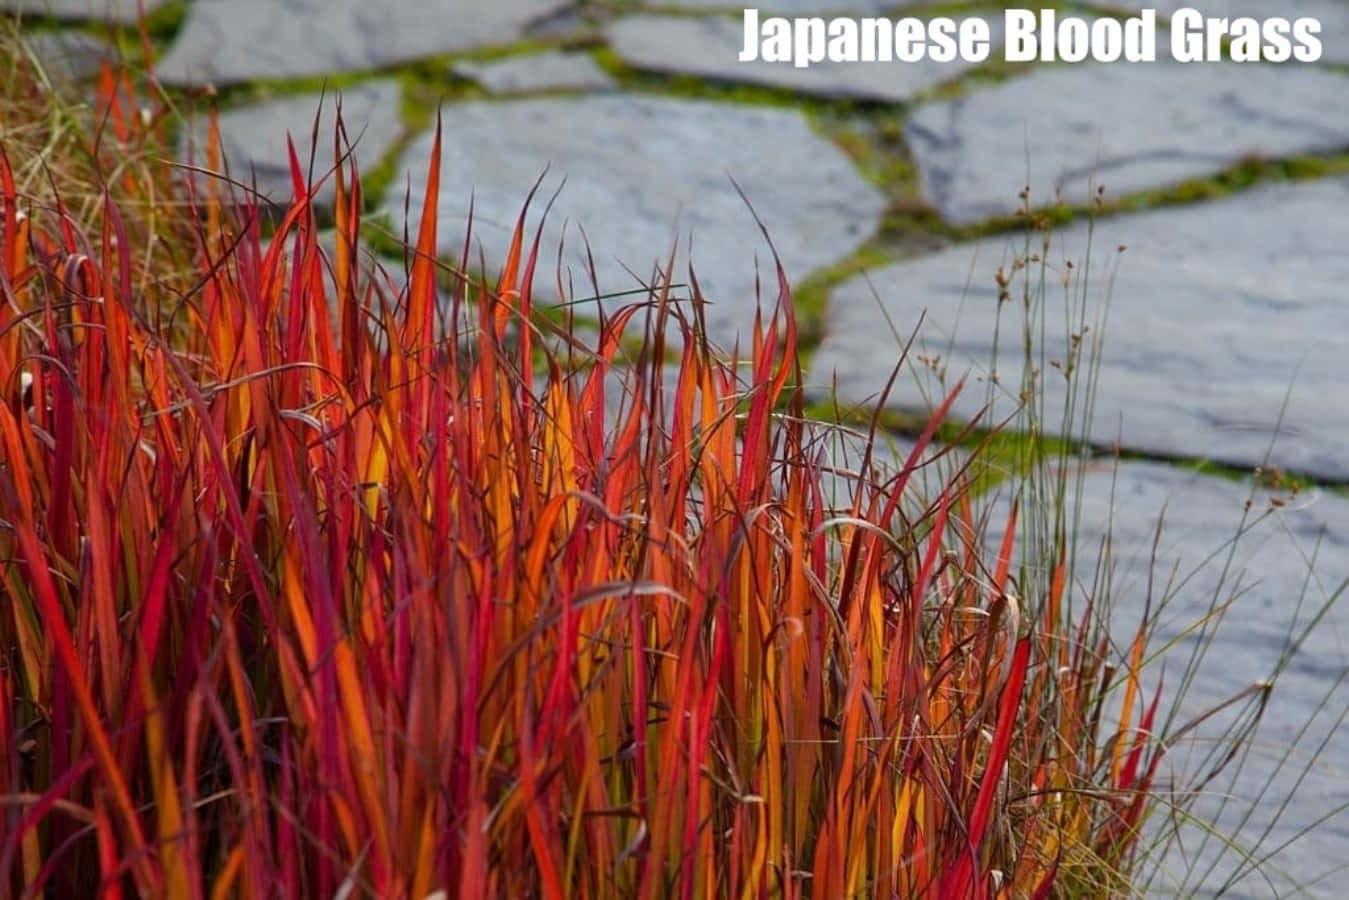 Identificaciónde Césped, Fotografía De La Planta De Sangre Japonesa.